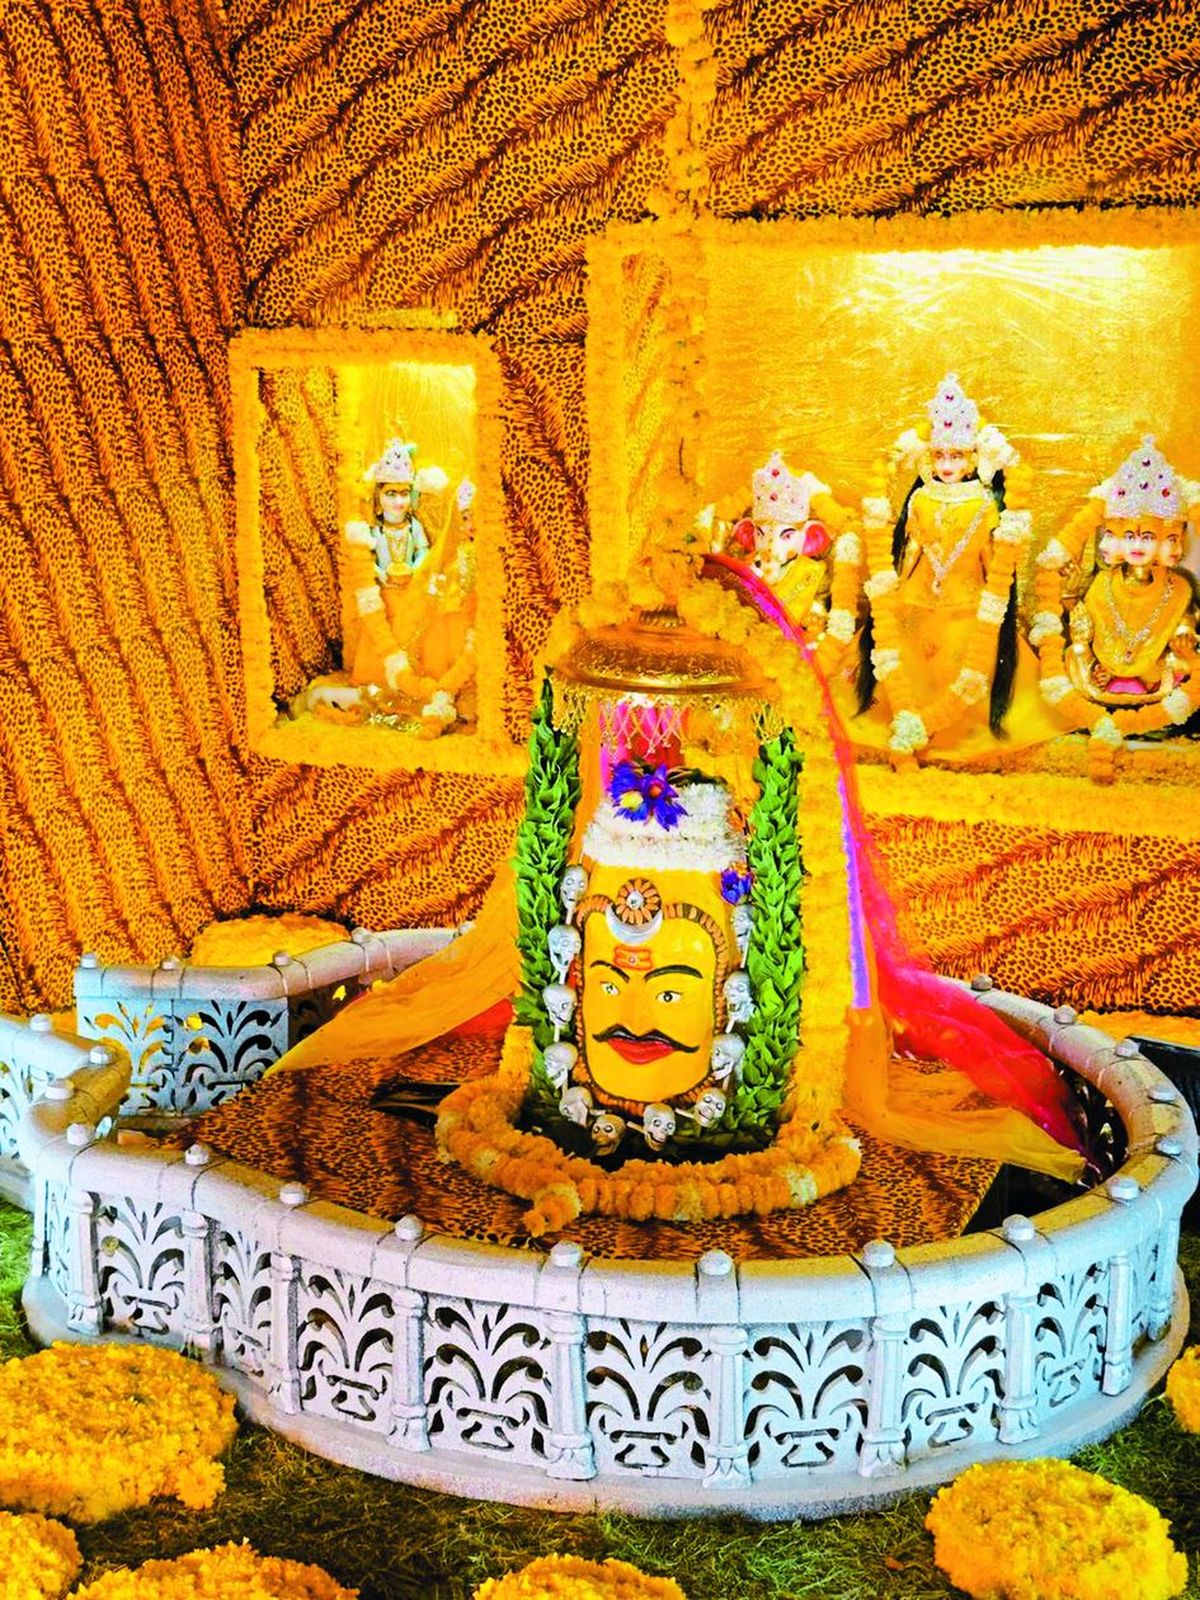 जोधपुर में हुए महाकाल के दर्शन, उज्जैन के महाकाल की तरह सजाया मंदिर, किया
श्रृंगार